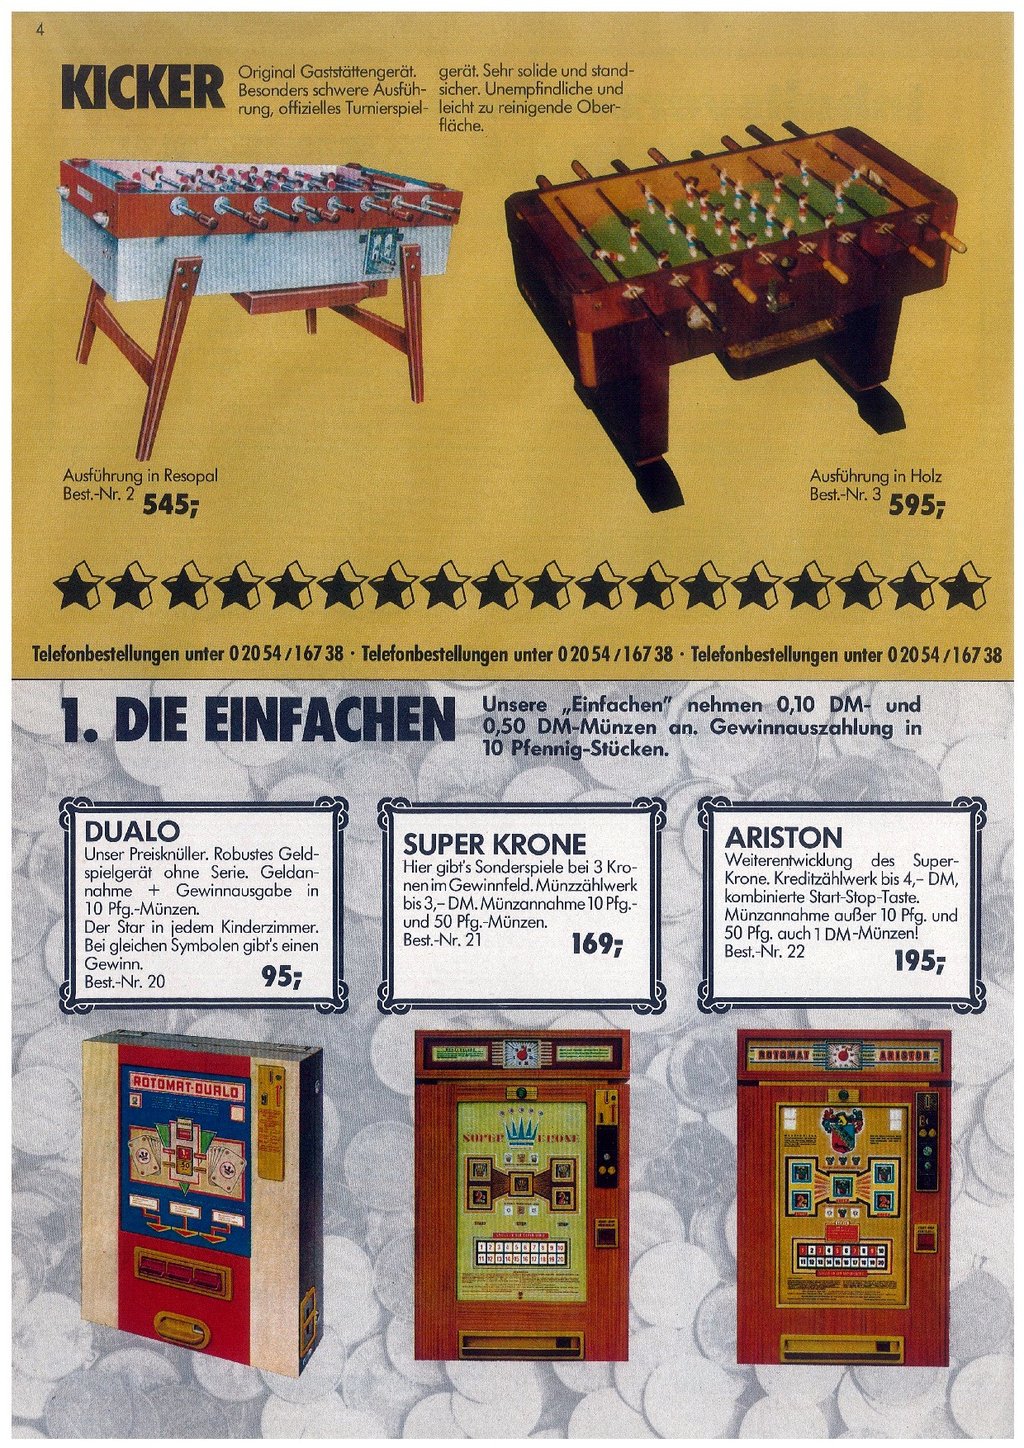 Grondig Gedetailleerd Beeldhouwer Automaten Hoffmann Katalog von 1982 - Auf ein Neues (m. 20 Bildern) |  Flippermarkt